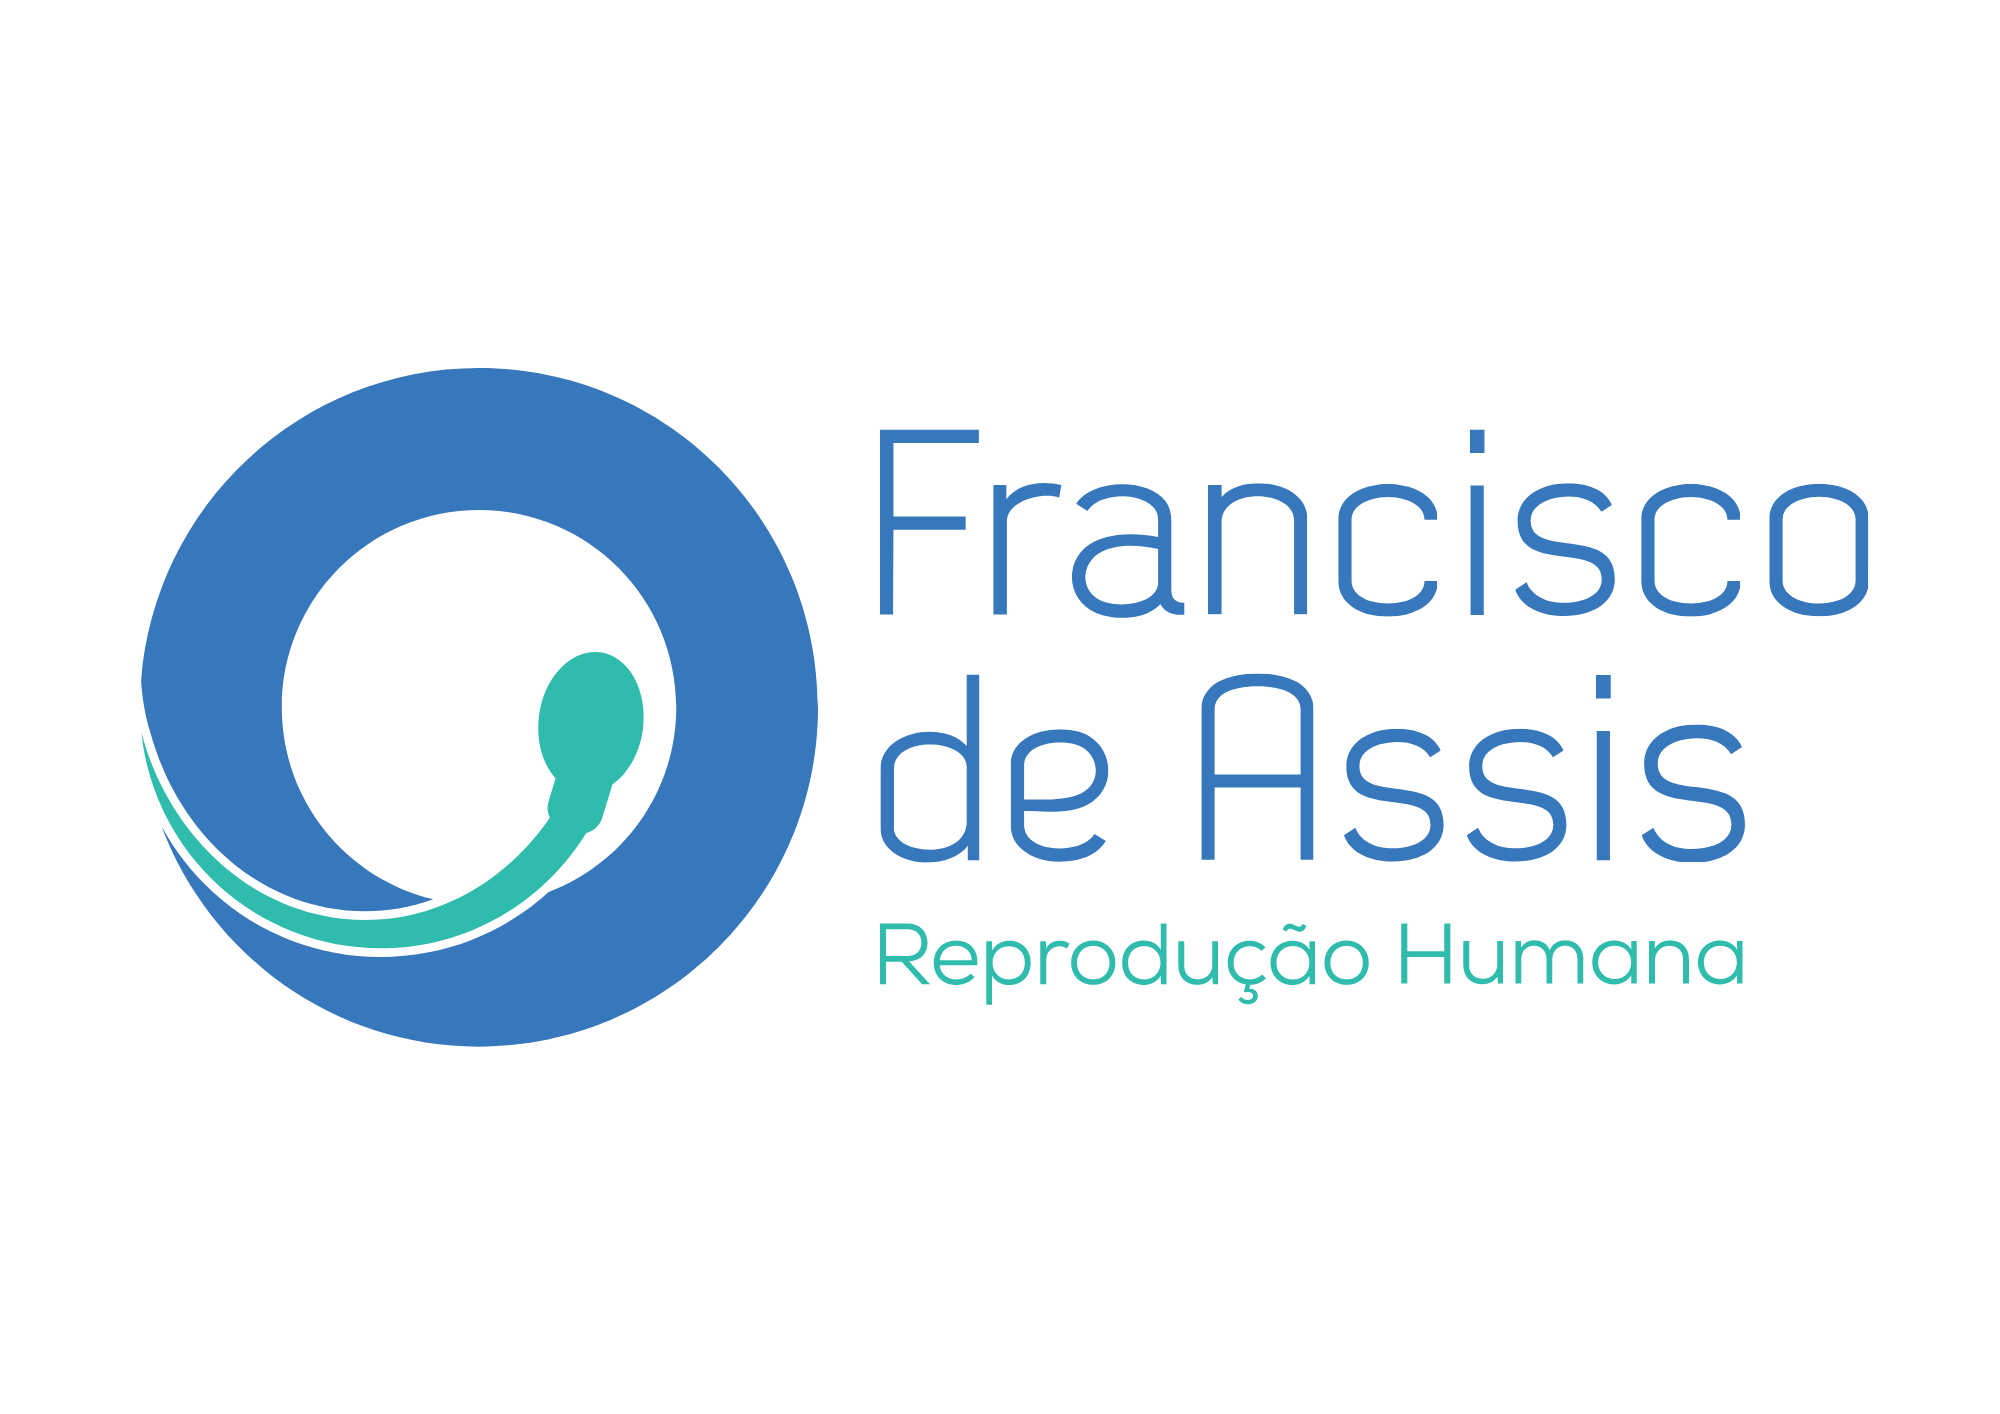 Dr. Francisco de Assis